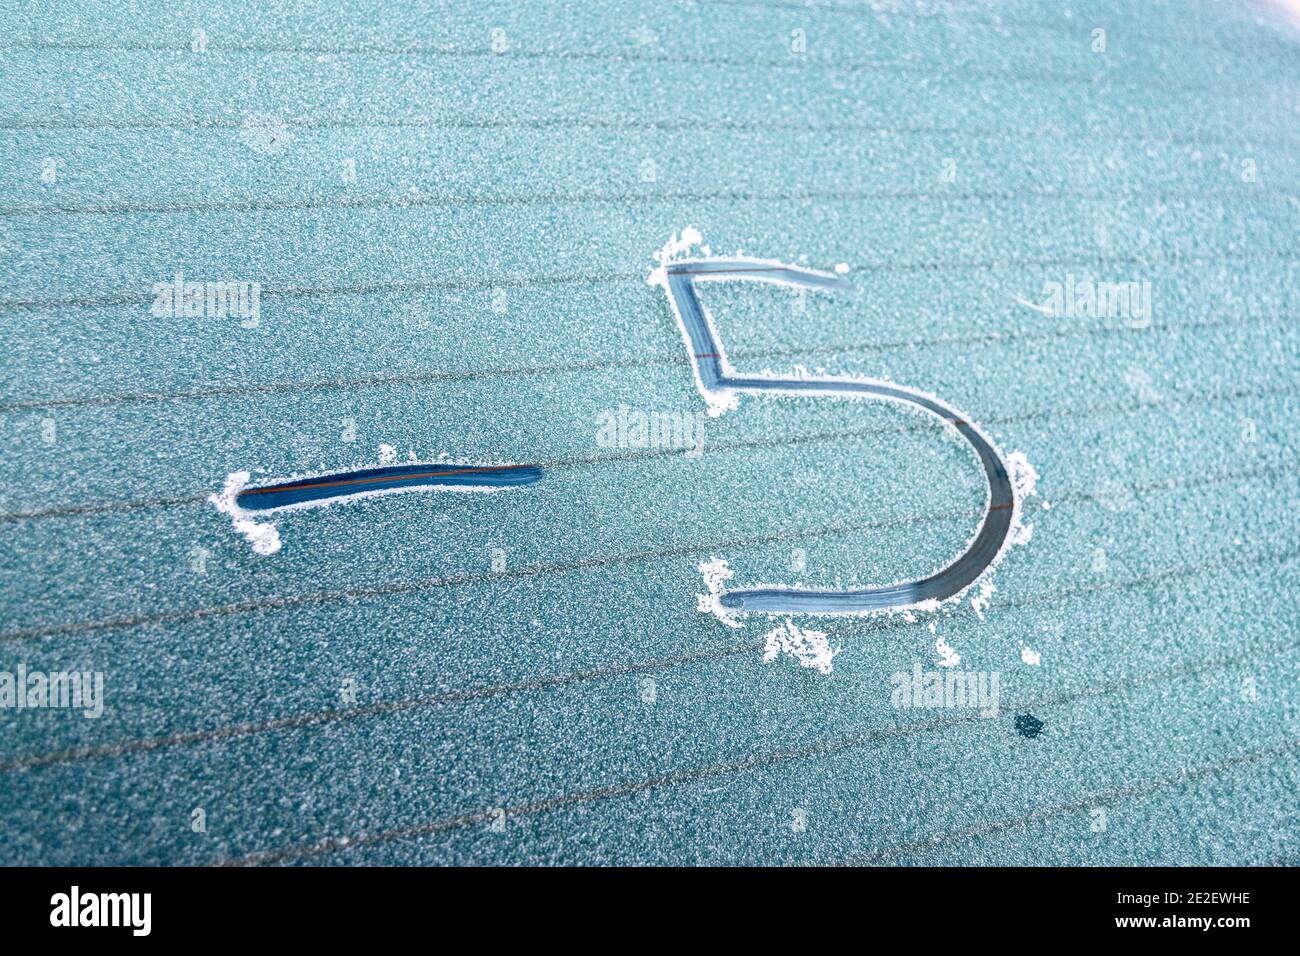 Invierno frío 2021 en Europa, coche congelando el vidrio por la mañana debido a las temperaturas negativas Foto de stock